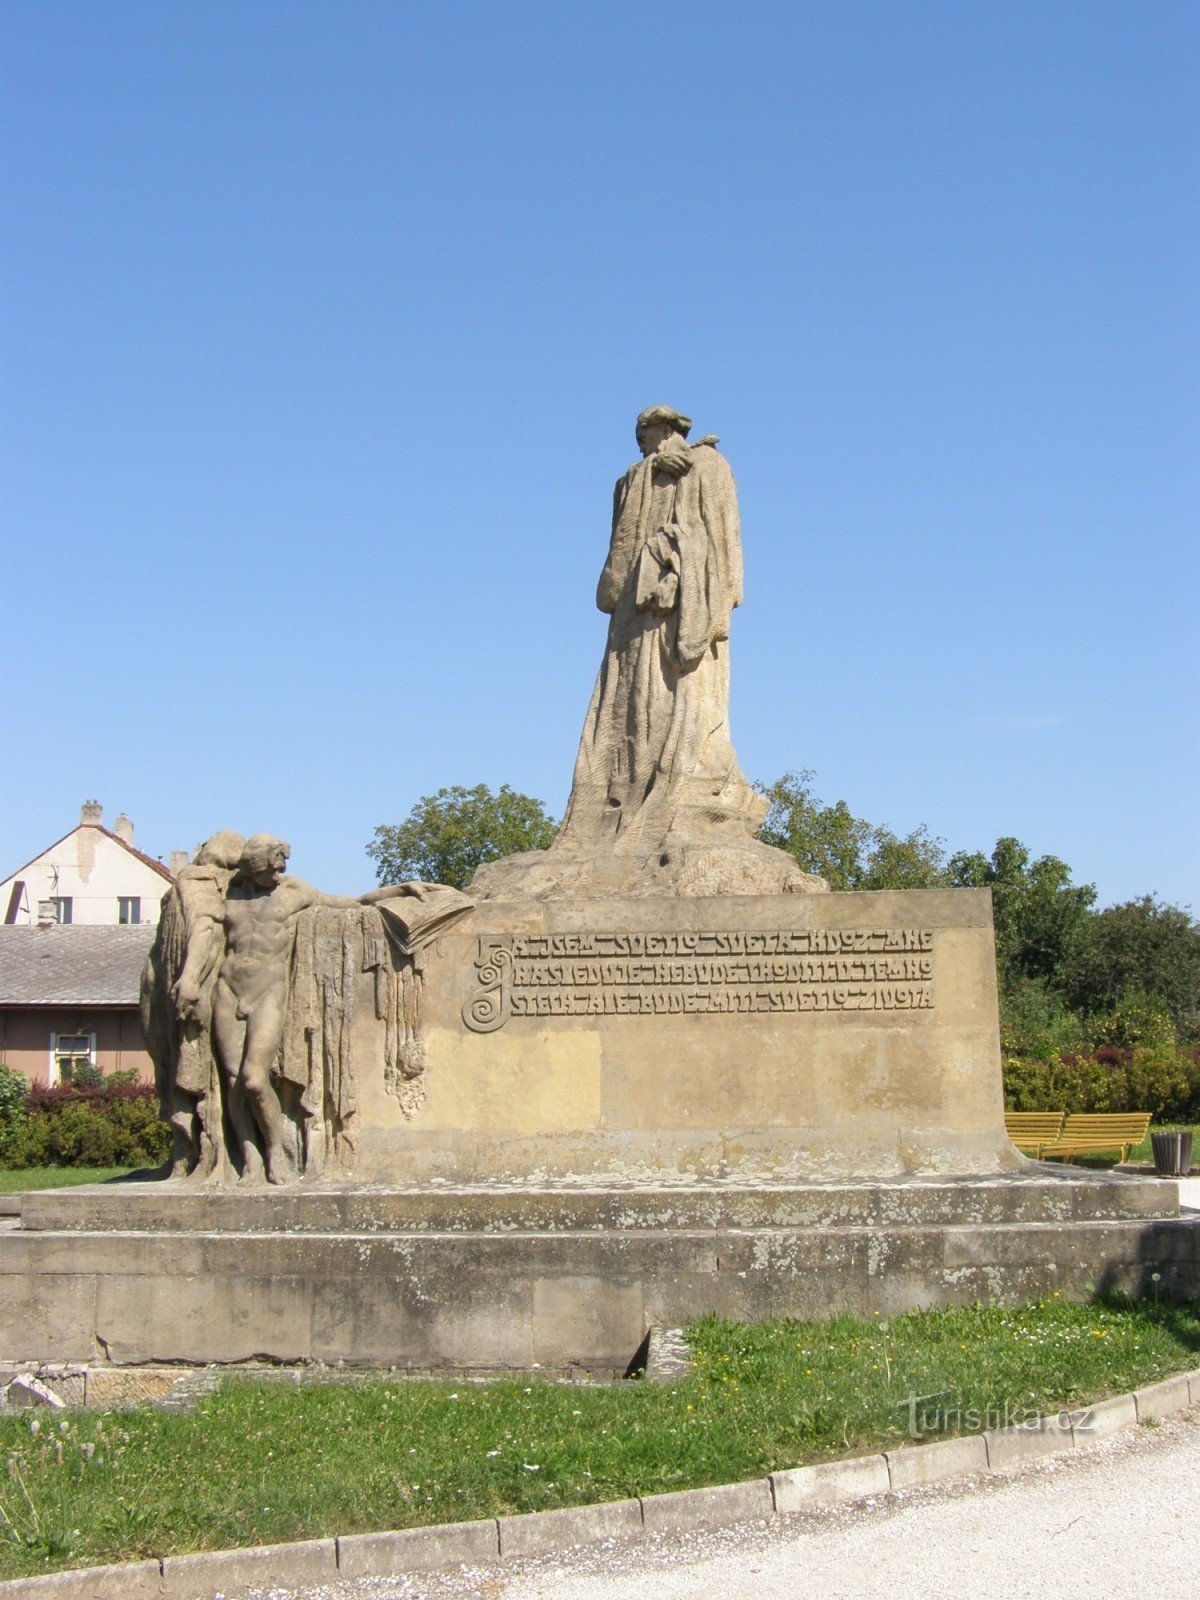 Hořice - mestari Jan Husin muistomerkki